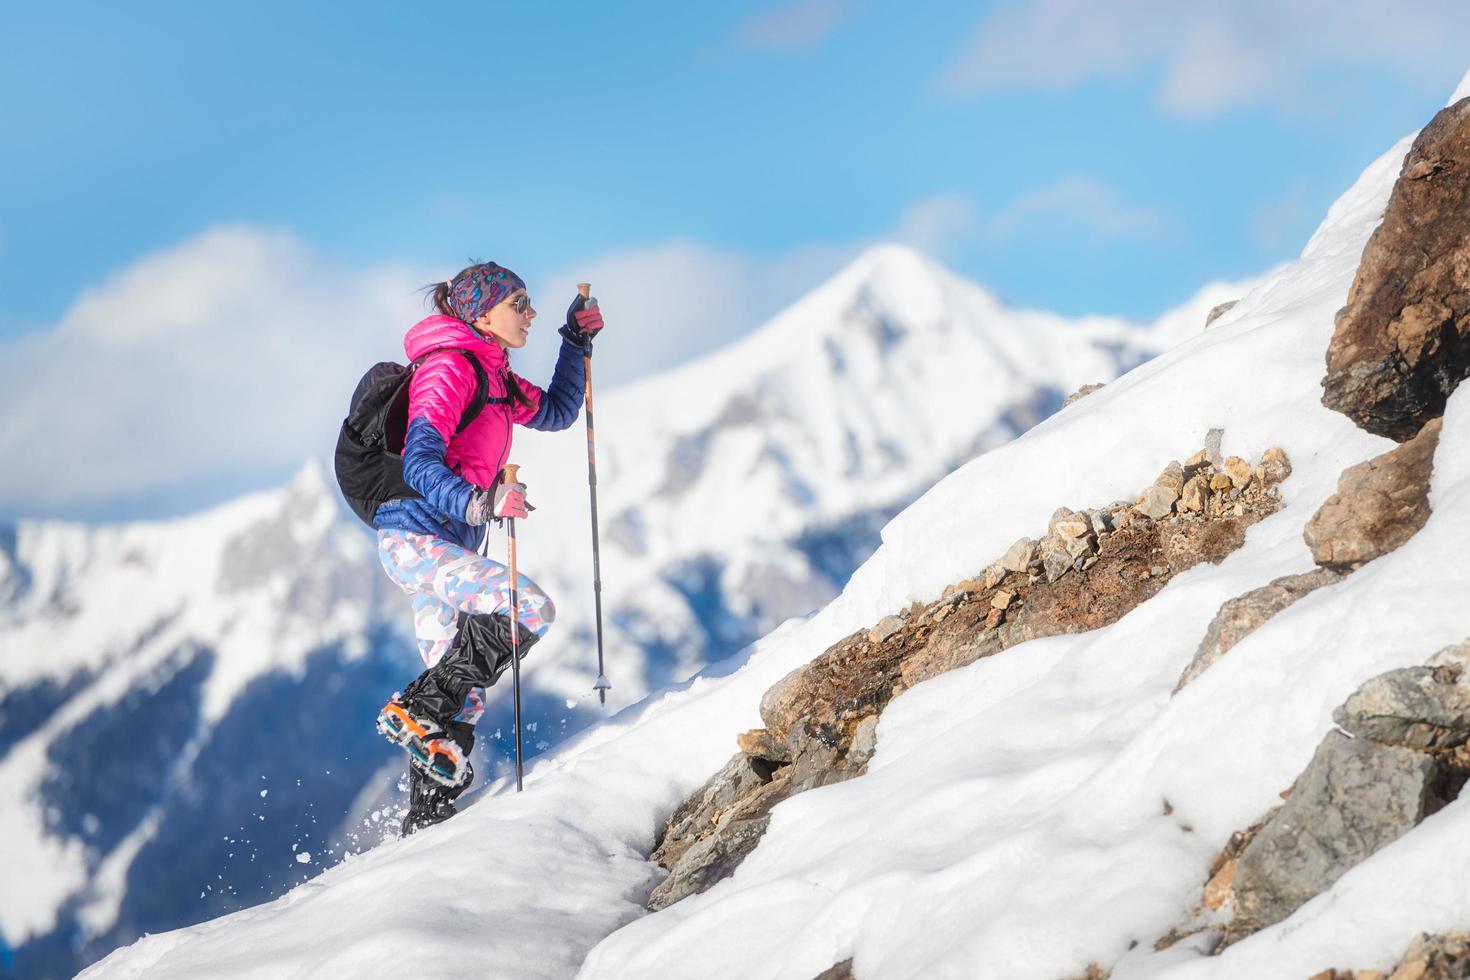 femme alpiniste lors d'une descente avec des crampons sur une pente enneigée photo